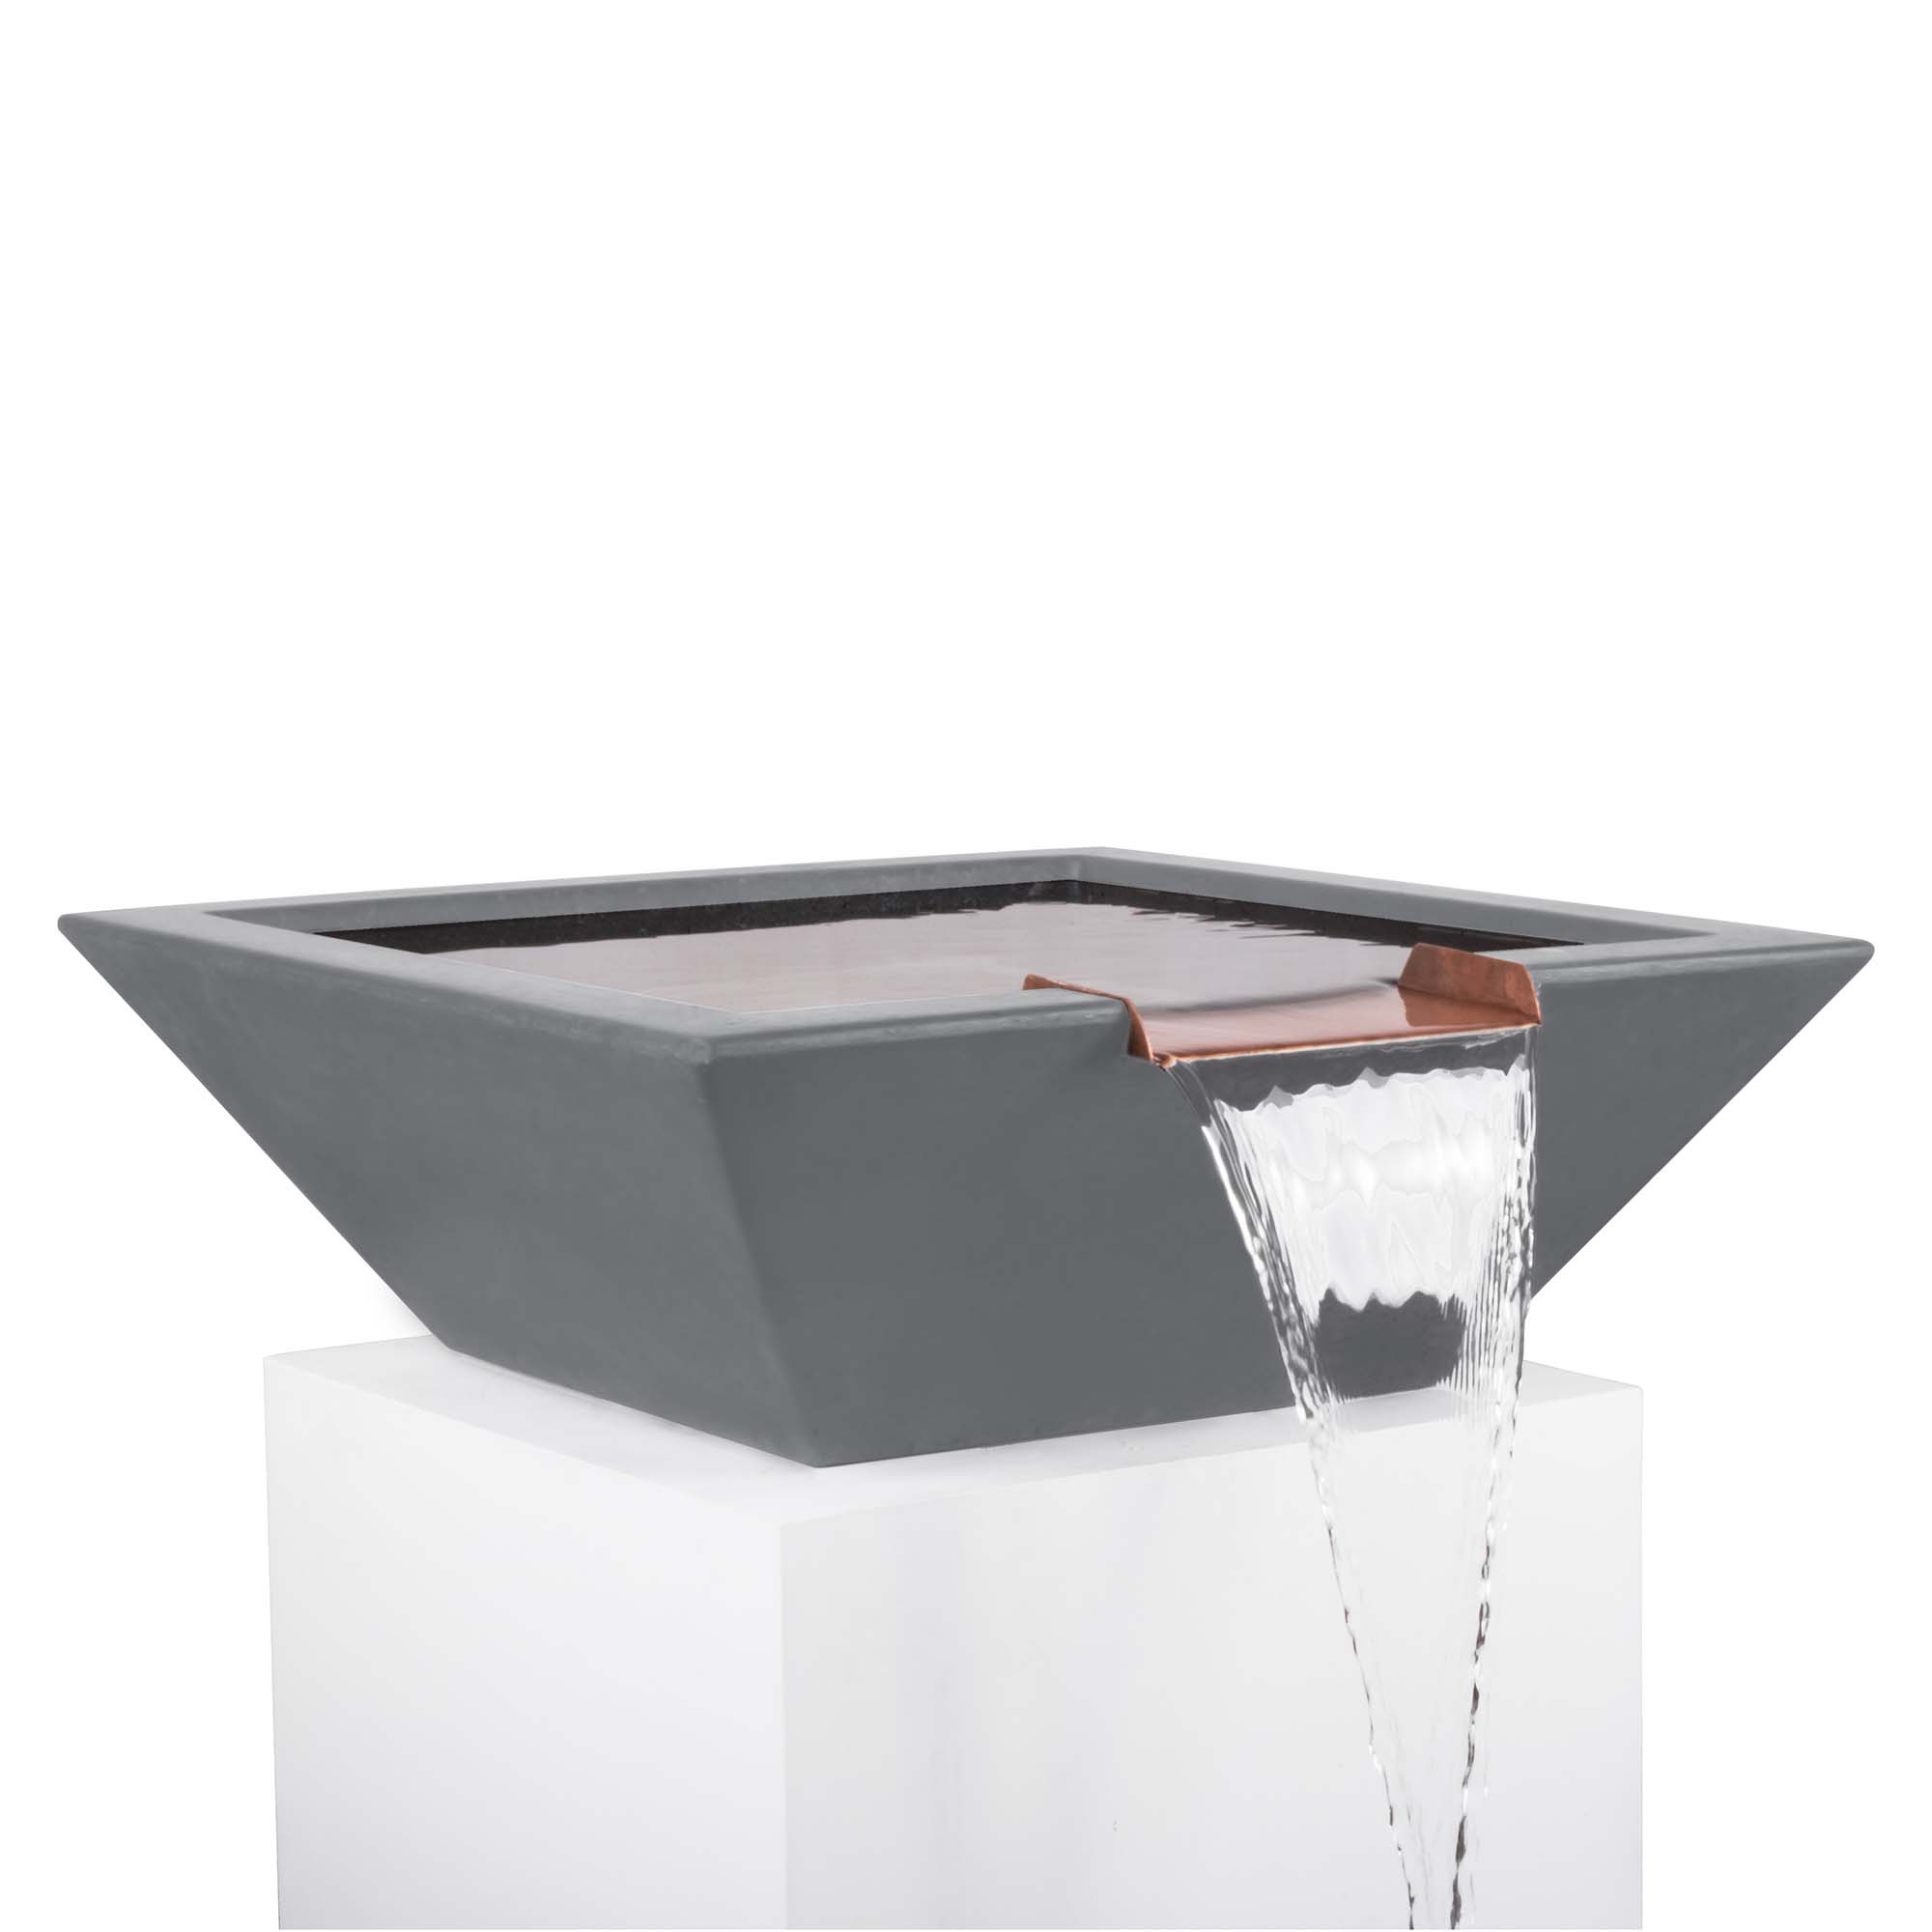 The Outdoor Plus Water Bowl GFRC Concrete / 24